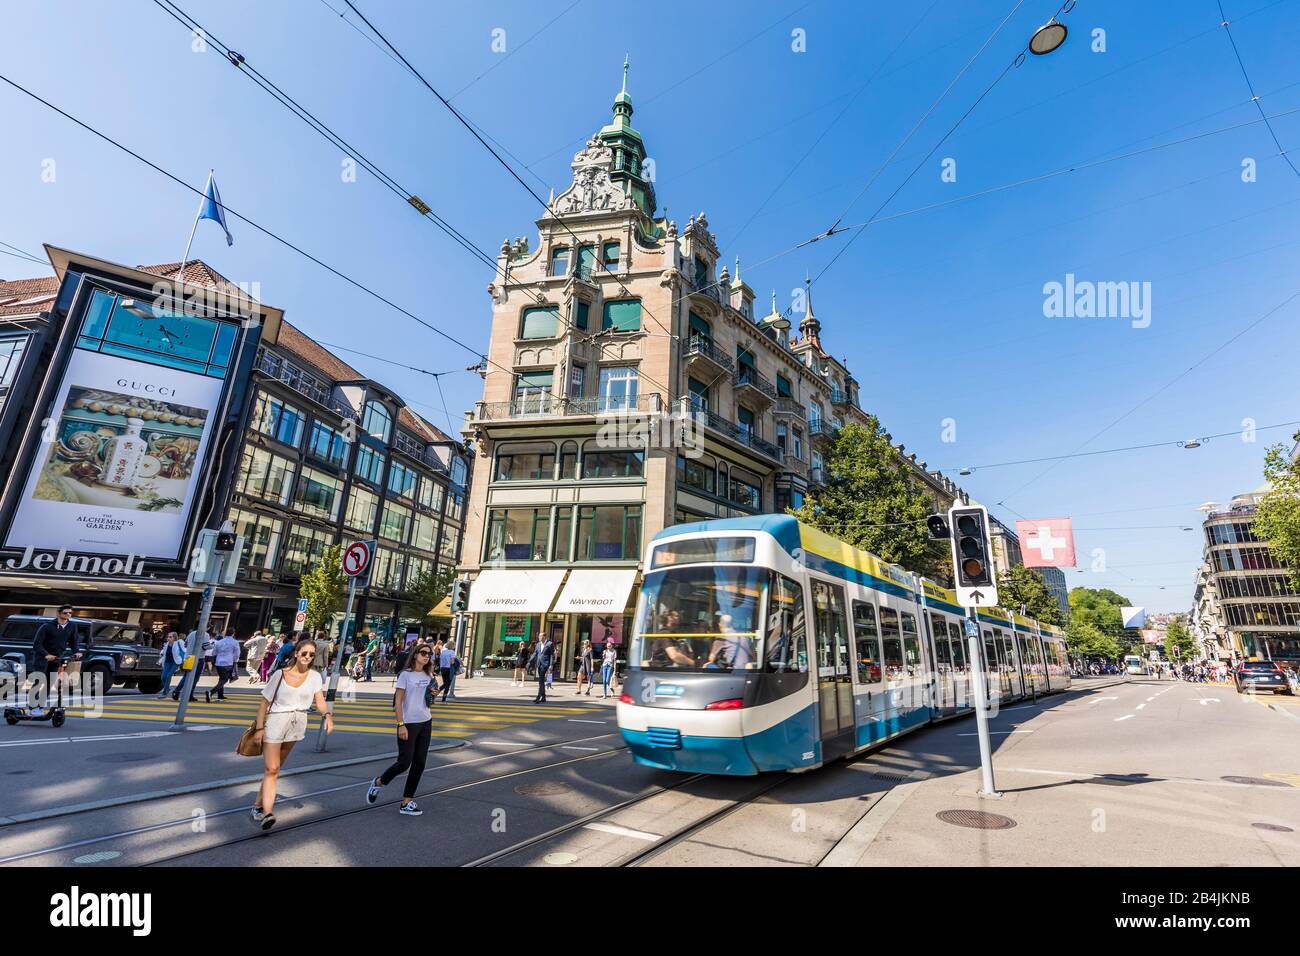 Suisse, Canton de Zurich, Zurich, Bahnhofstrasse, rue commerçante, grand magasin Jelmoli, boutiques, tram, tram Banque D'Images